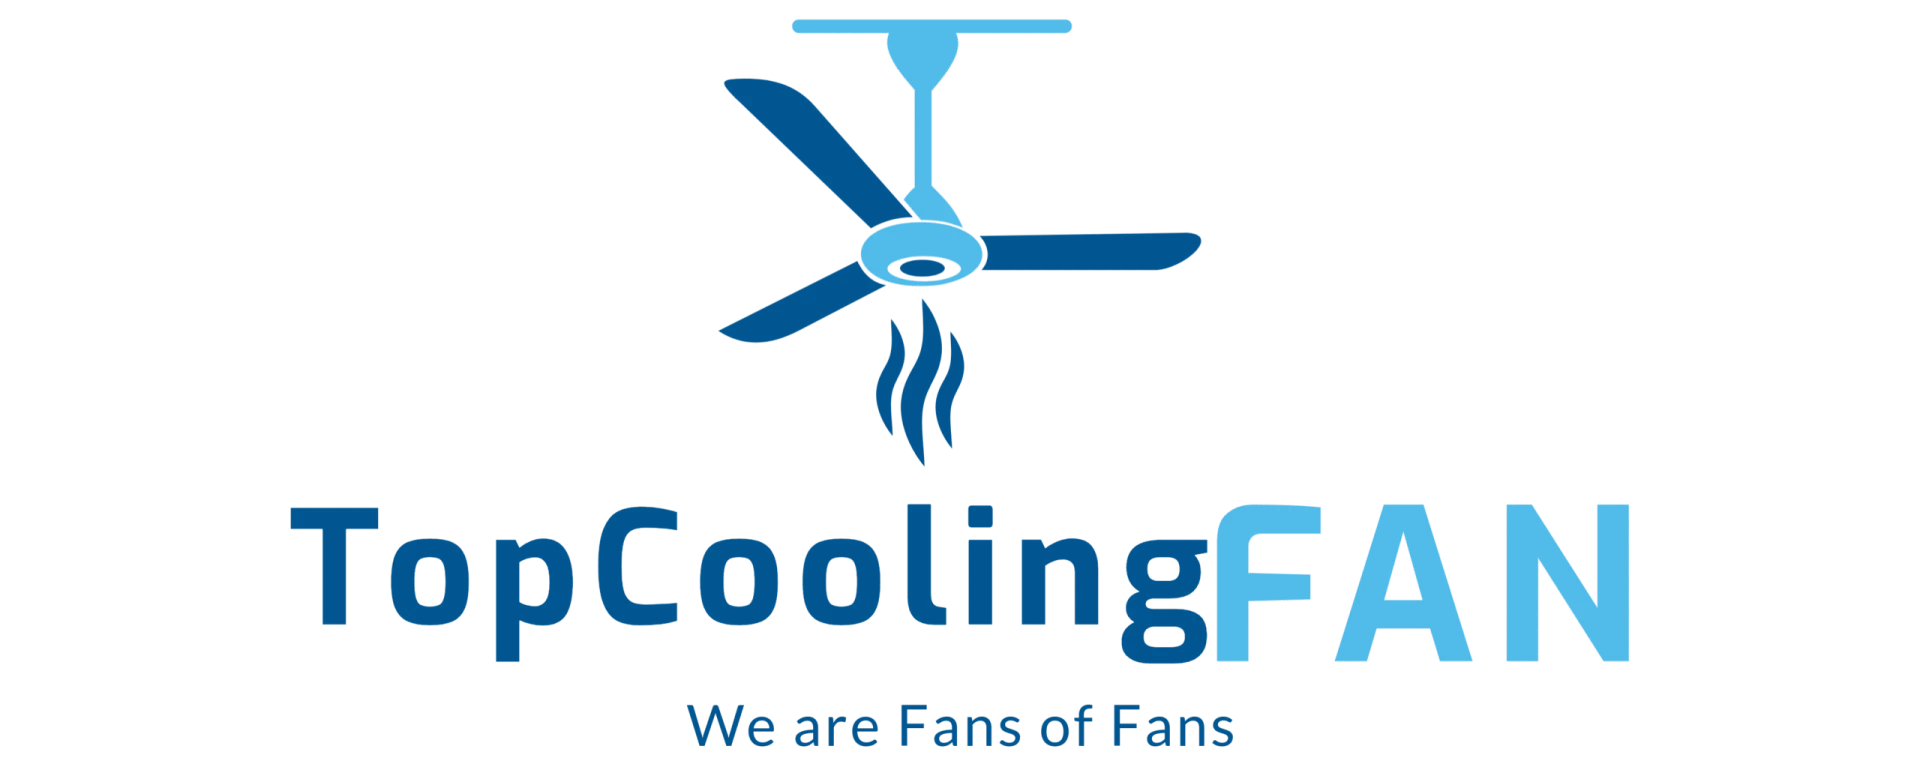 Top cooling fan logo.